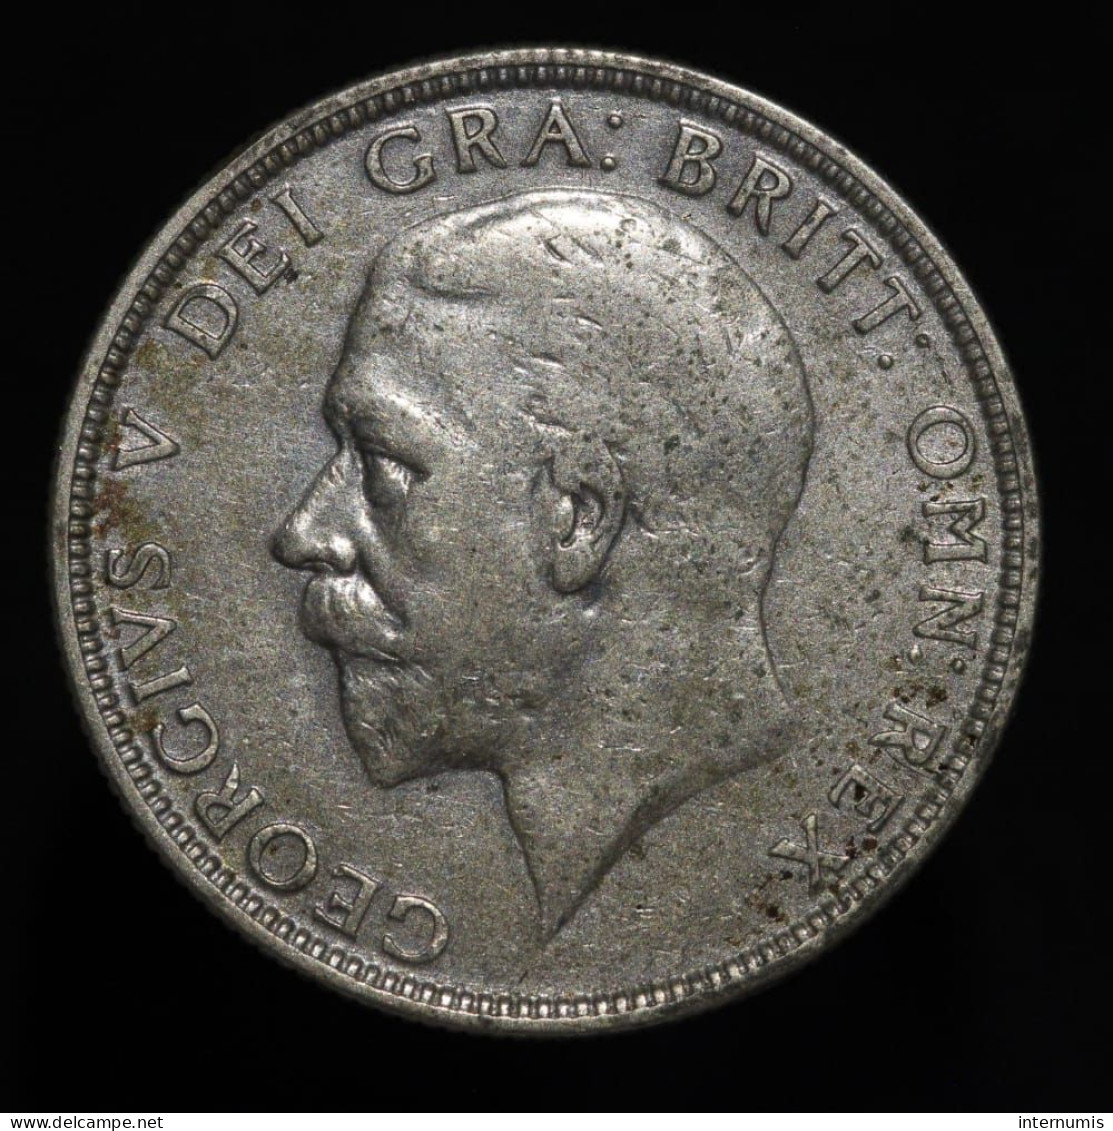 Grande-Bretagne / United Kingdom, George V, 1 Florin, 1935, Argent (Silver), TTB+ (EF), KM#834 - J. 1 Florin / 2 Schillings